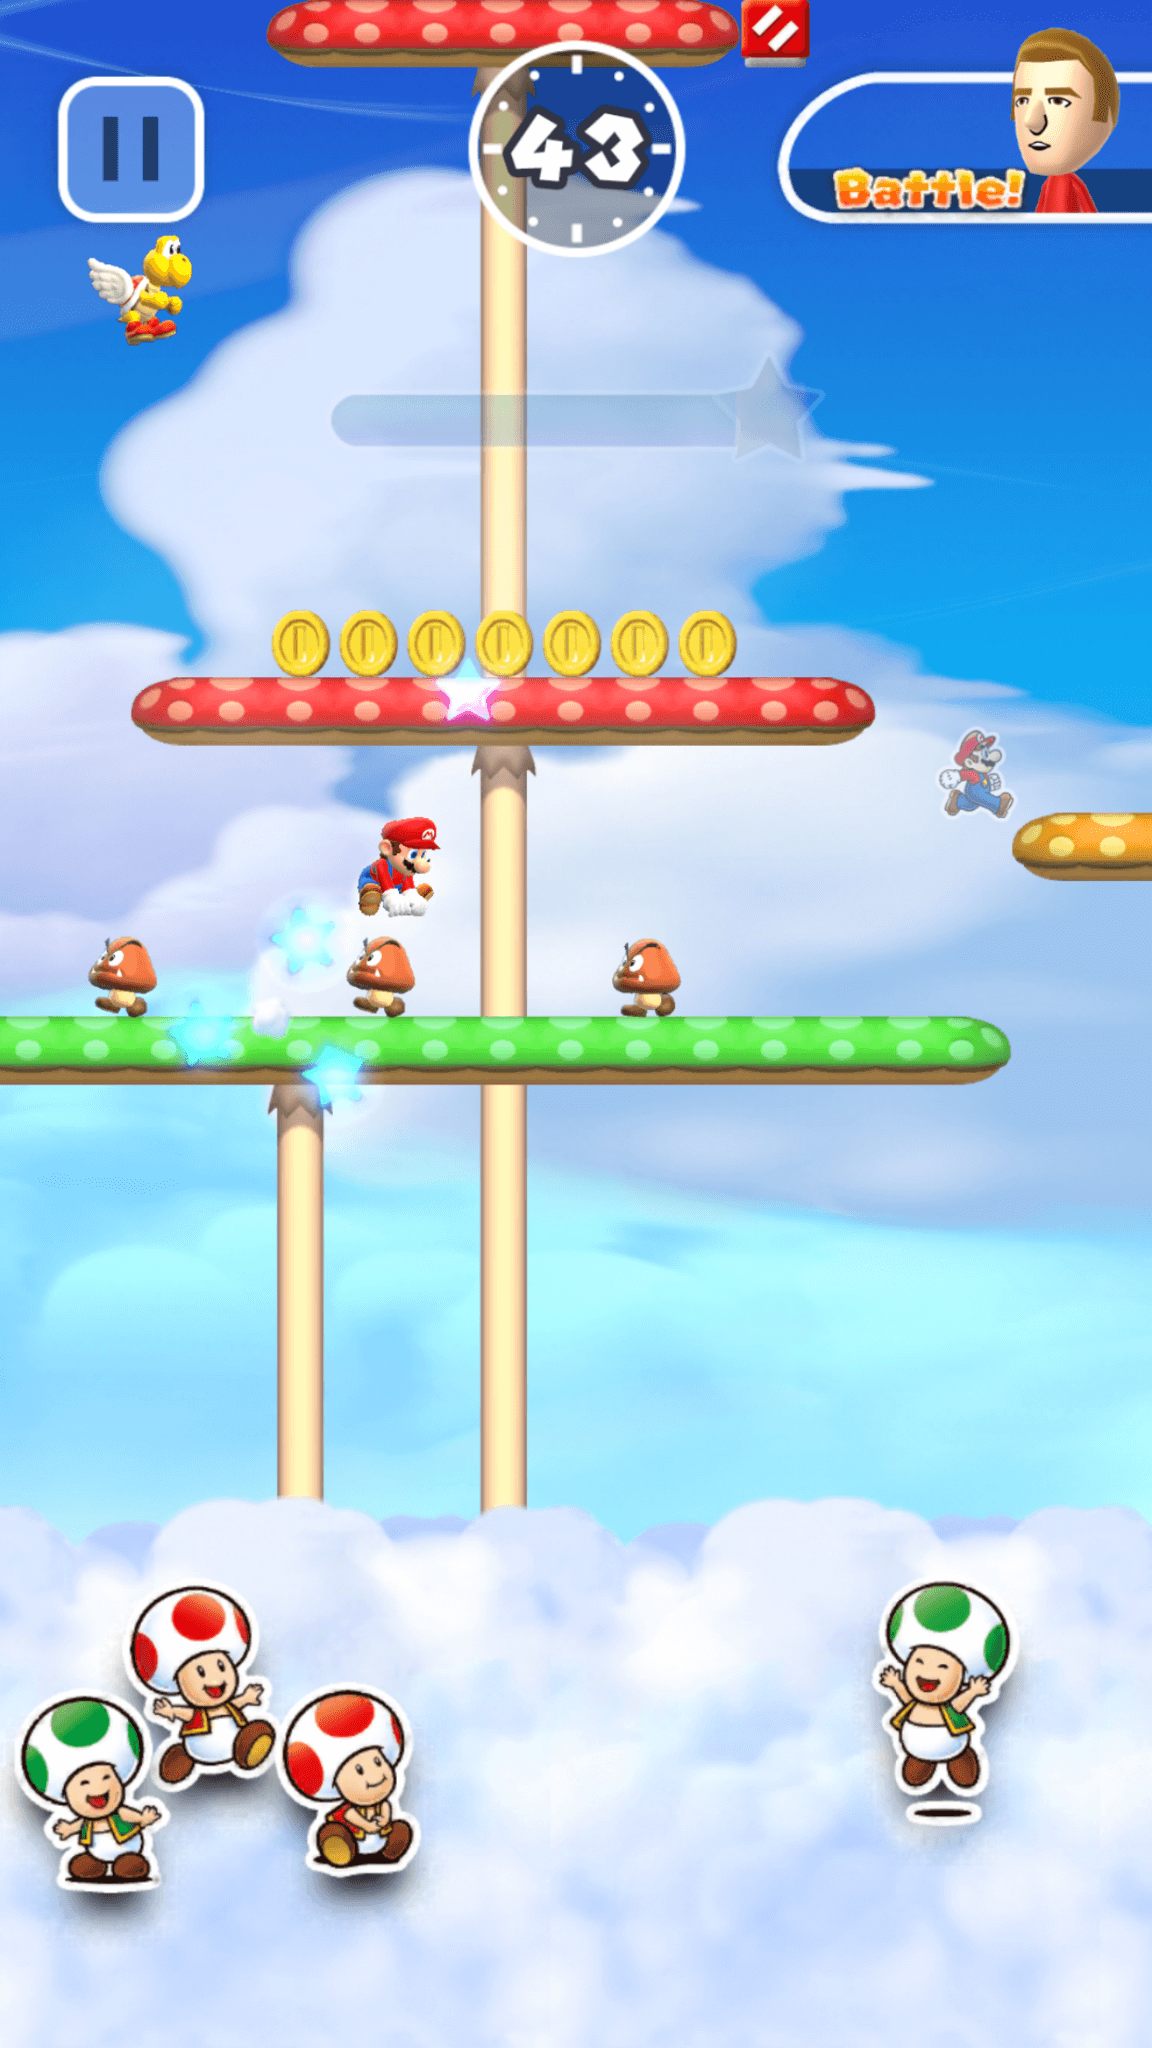 Super Mario Run: Es war einmal in einer weit, weit entfernten Wolke… (Bildrechte: Nintendo)